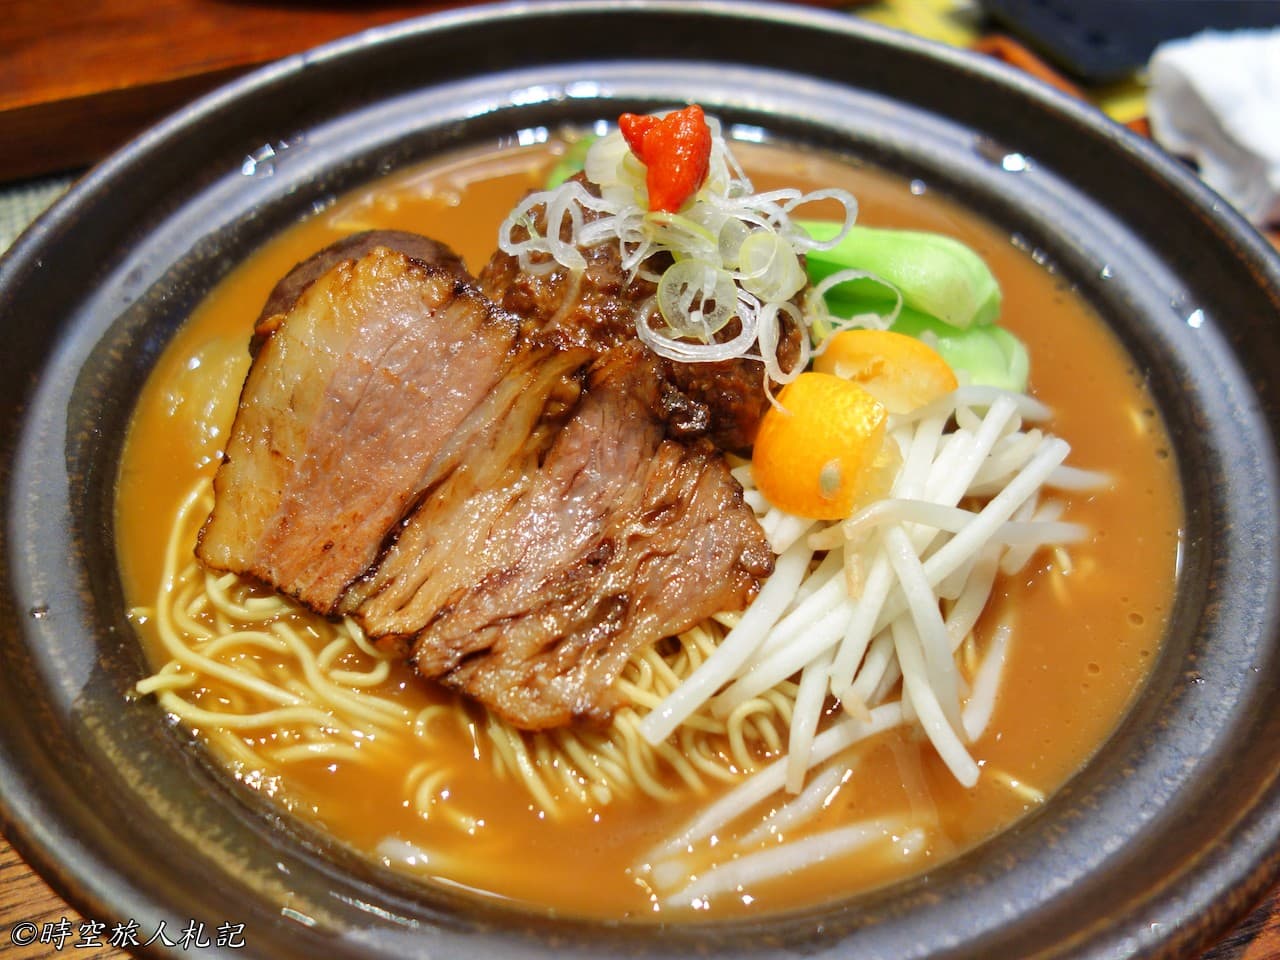 神戶美食,kobe-food,日本神戶美食 45